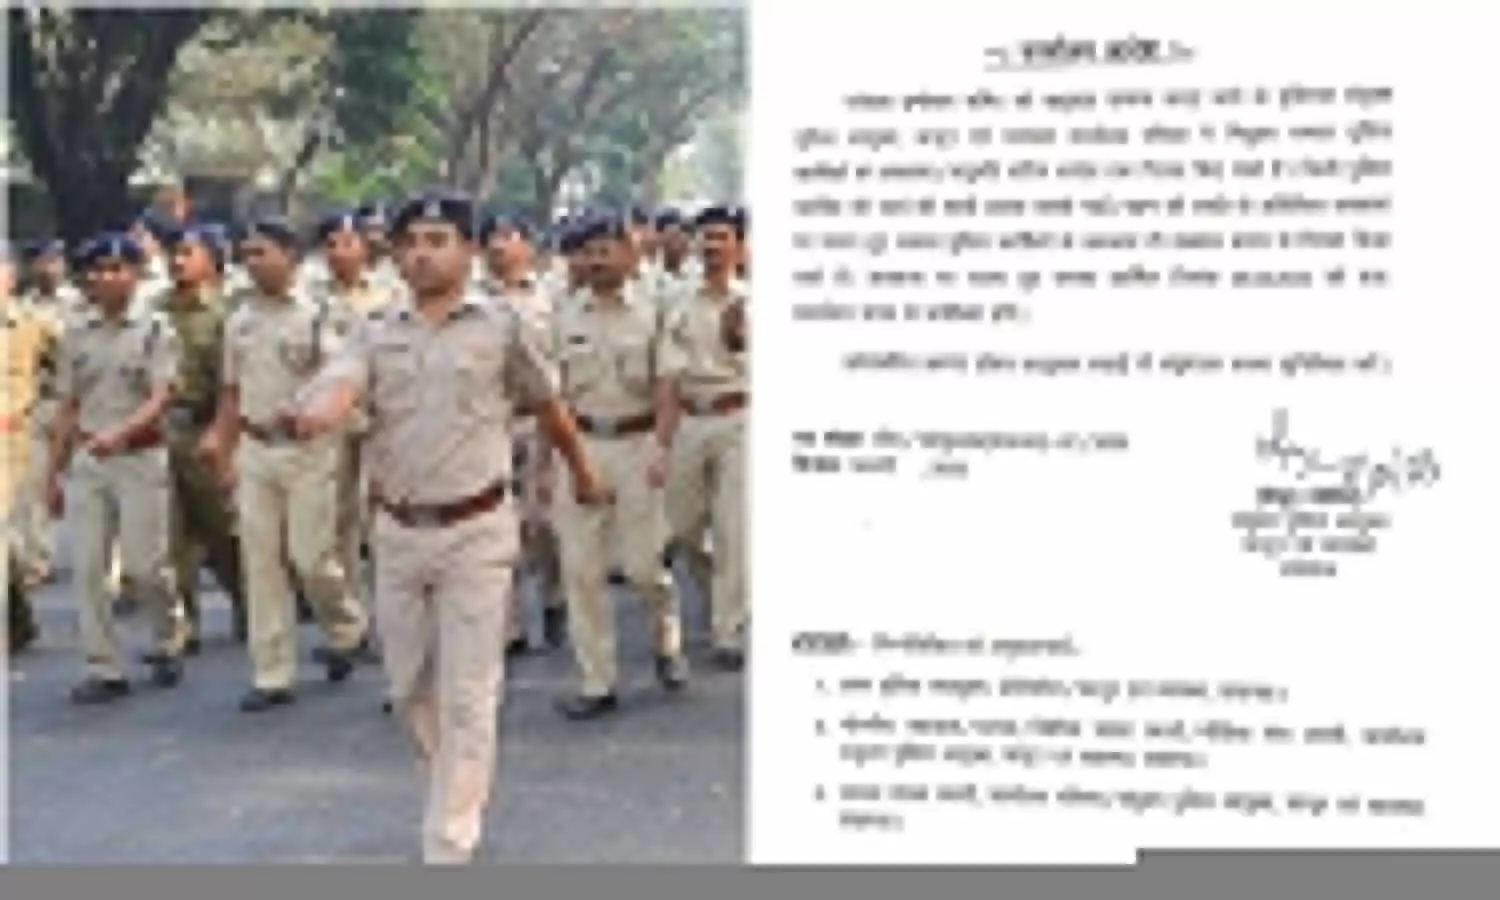 UP News: दूल्हा बनने वाले पुलिसवालों को ही मिलेगी छुट्टी, अवकाश पर गए पुलिसकर्मियों को वापस बुलाया गया